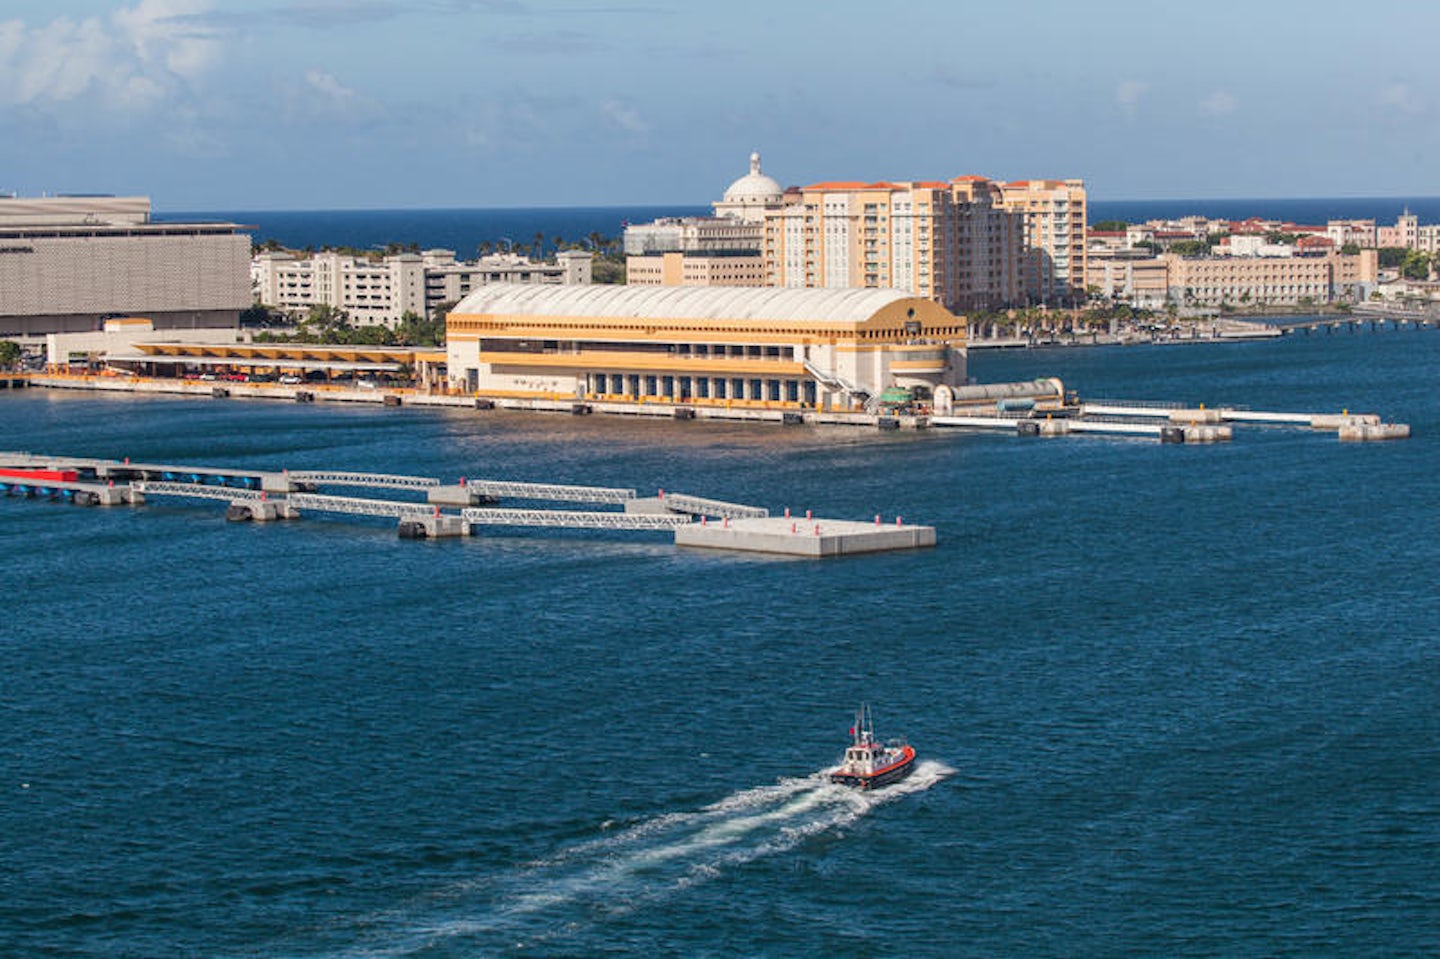 San Juan Cruise Port